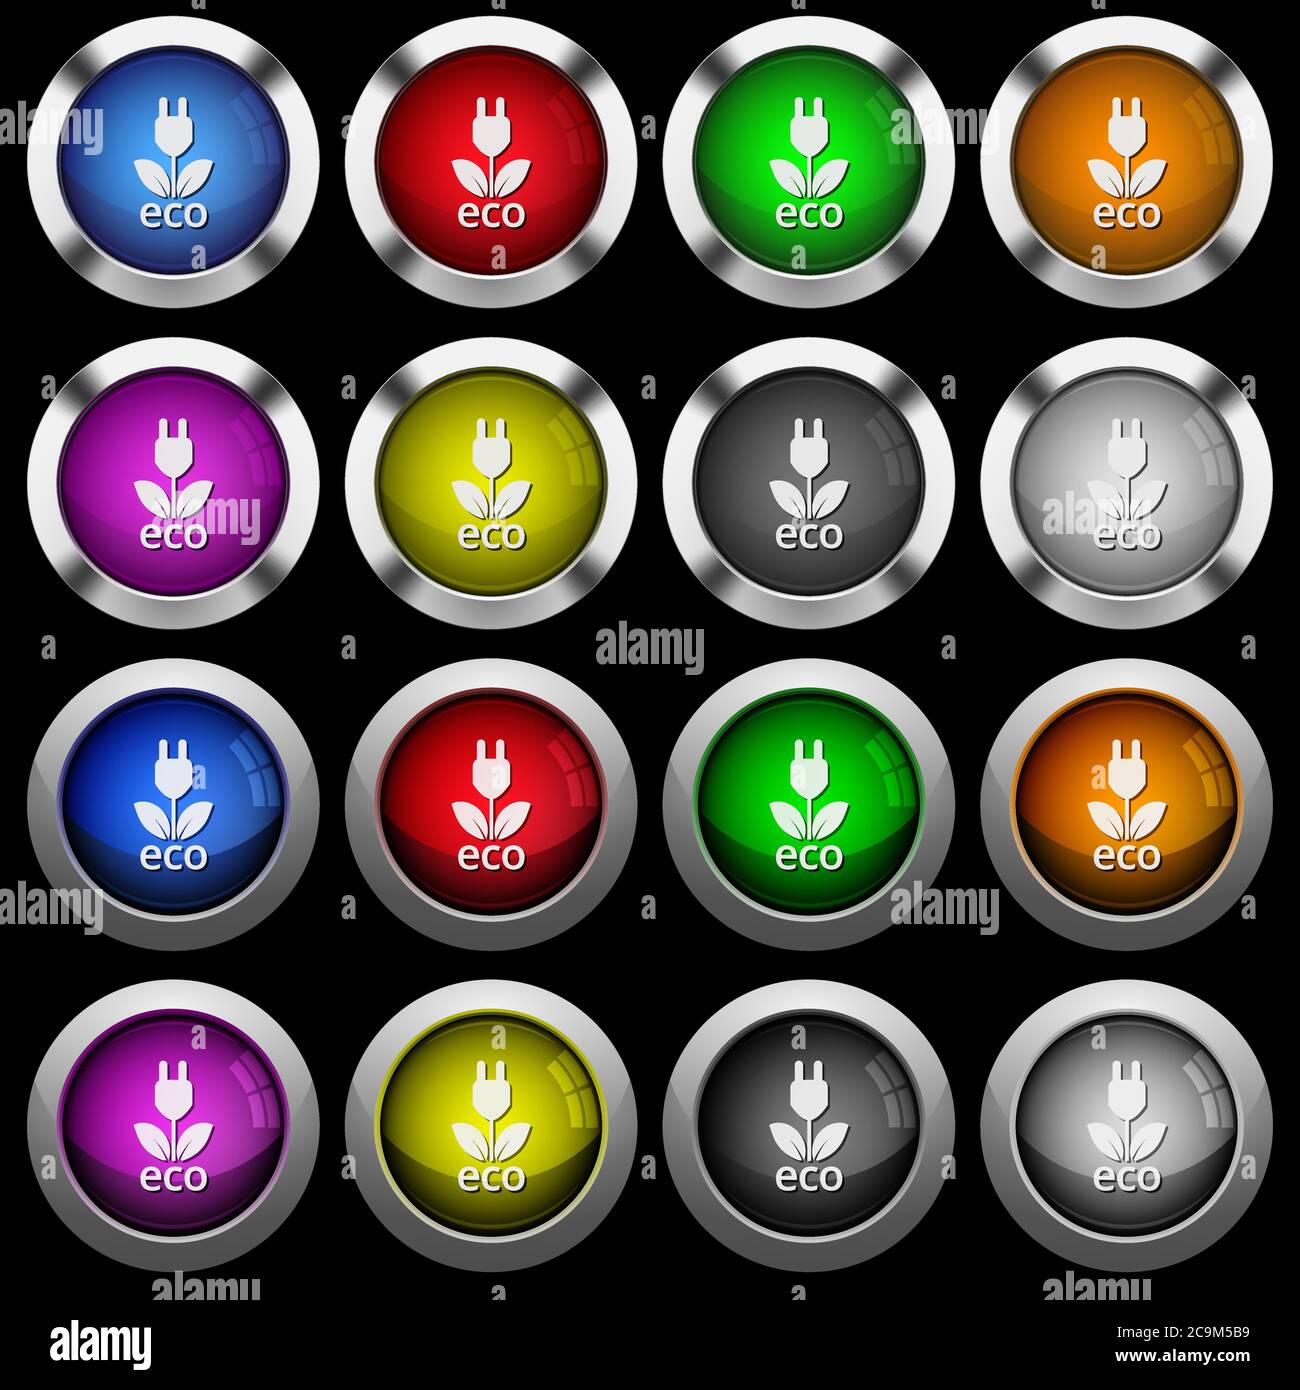 Icone eco-energetiche bianche in pulsanti rotondi lucidi con cornici in acciaio su sfondo nero. I pulsanti sono disponibili in due stili diversi e in otto colori. Illustrazione Vettoriale